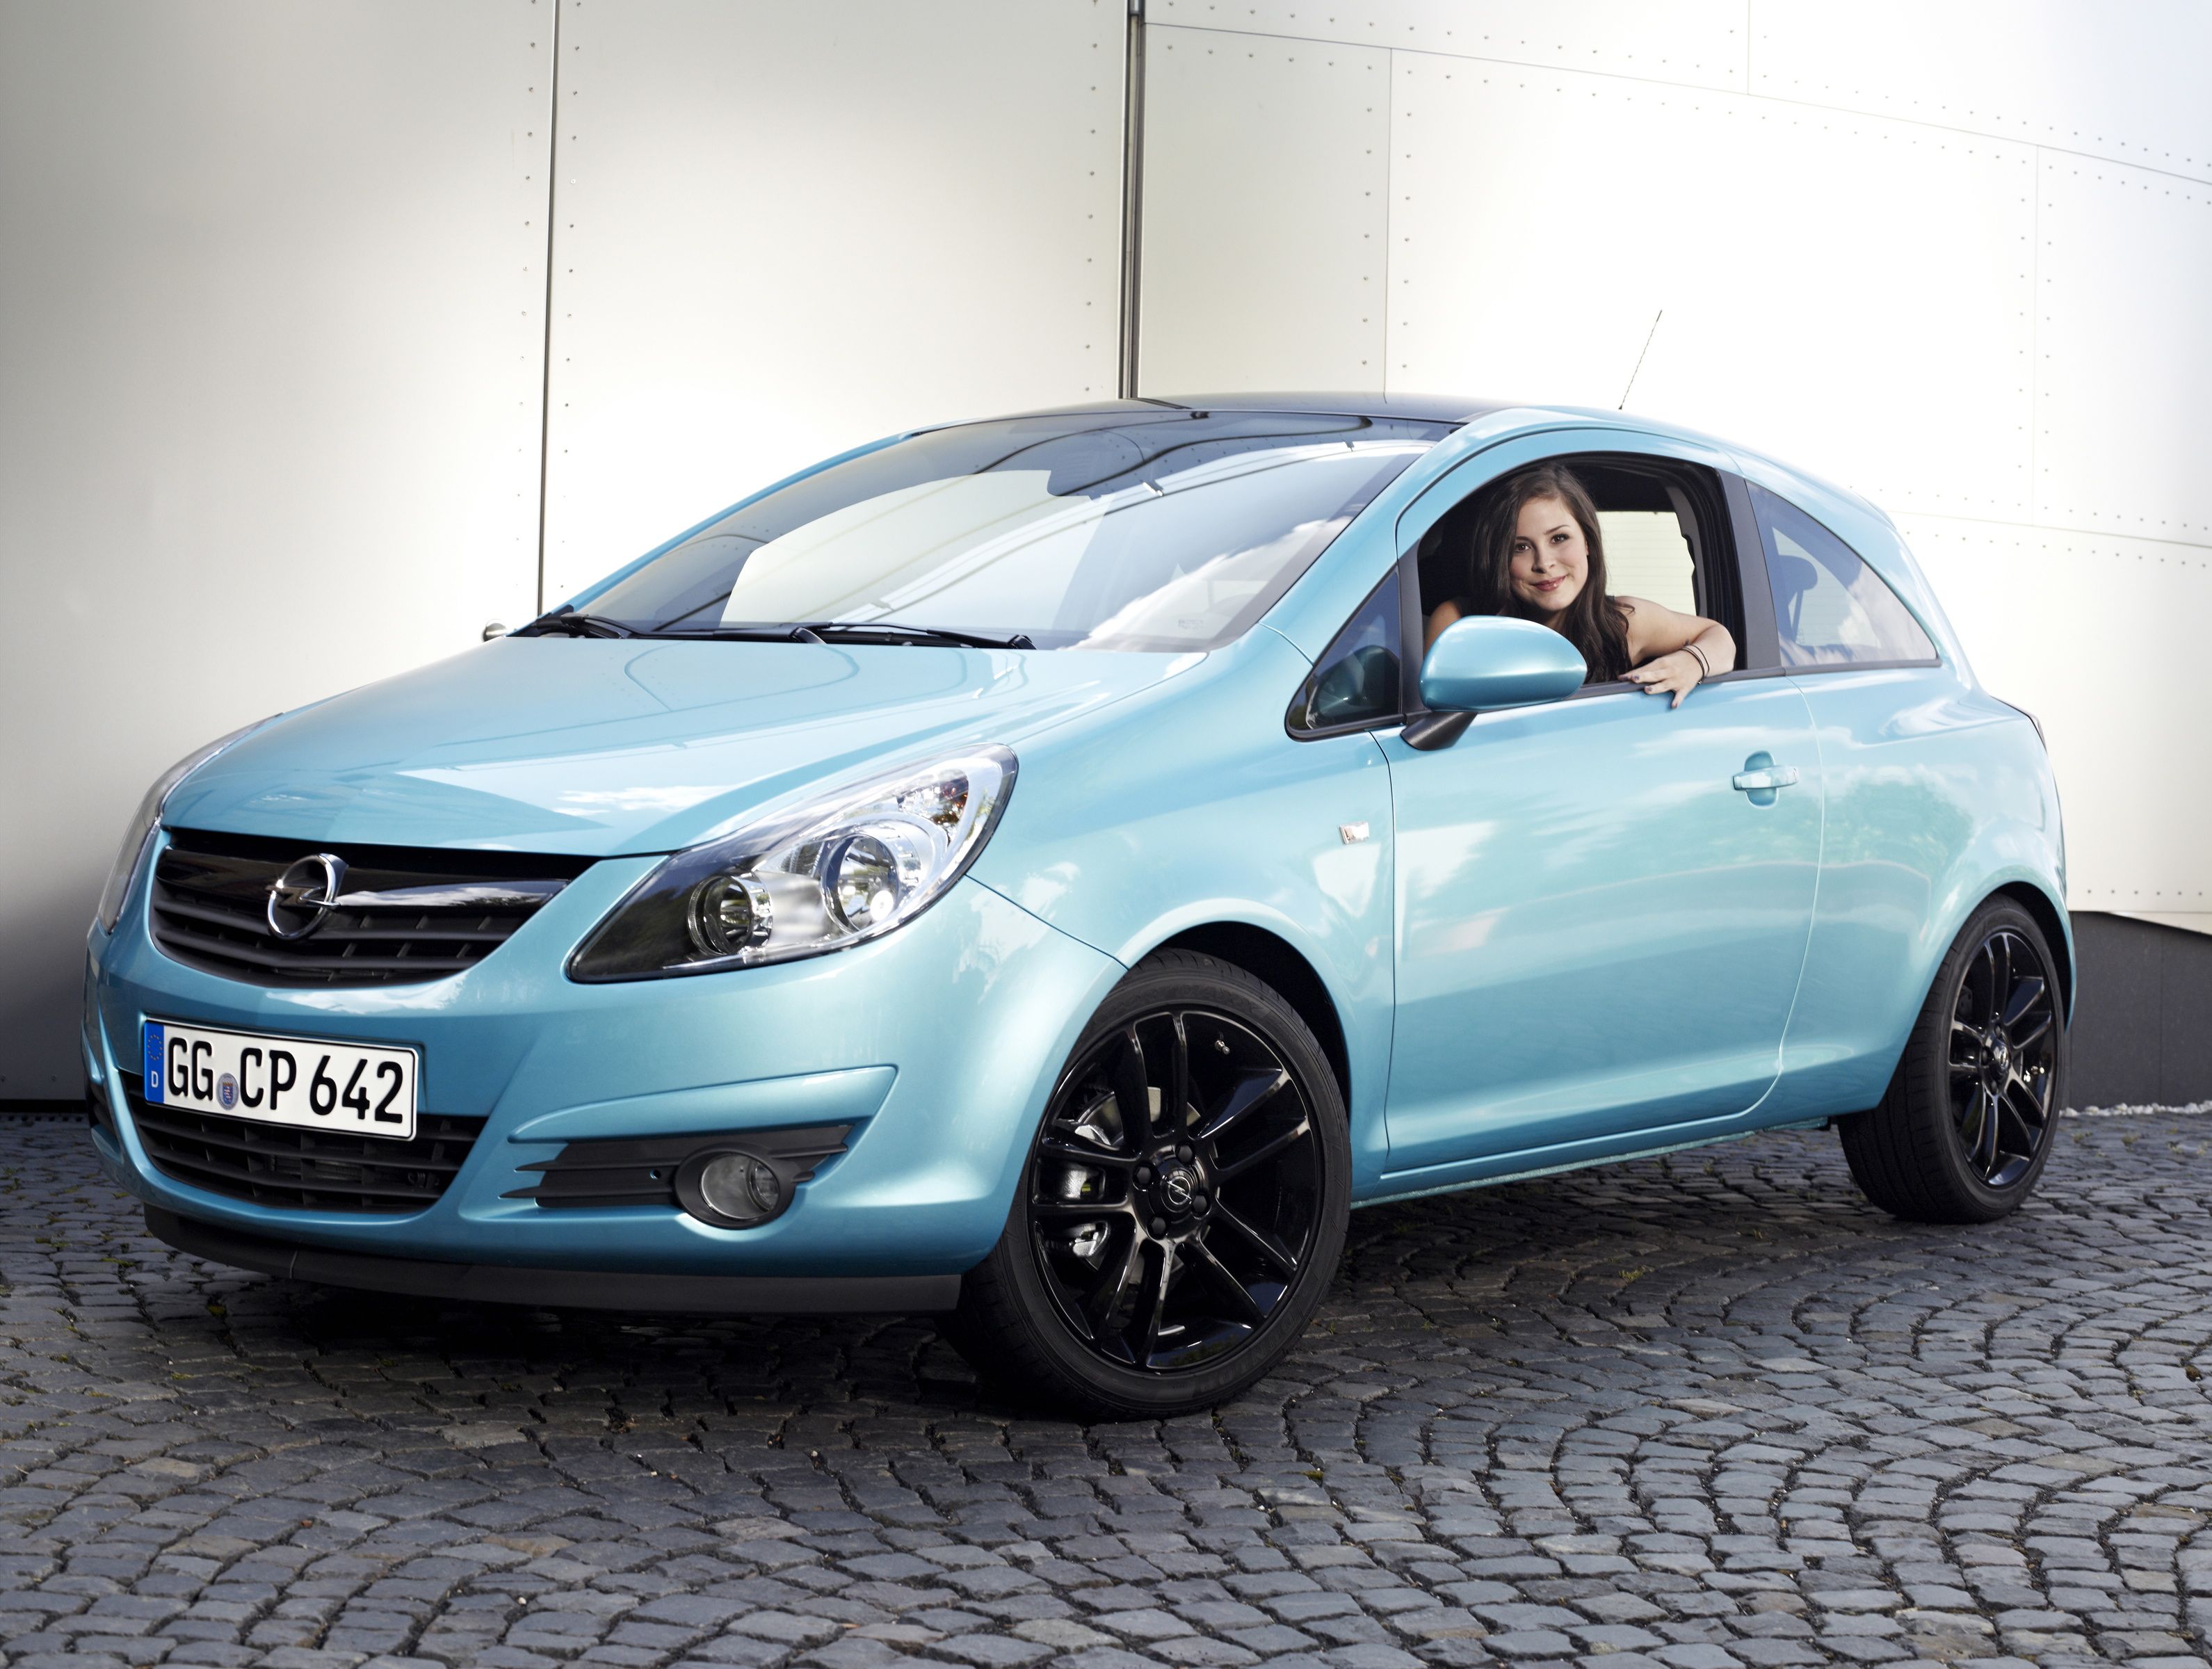 Купить опель корса автомат. Опель Корса 2008 голубой. Opel Corsa голубая. Опель Корса 2008. Opel Corsa d 2007 1.2.